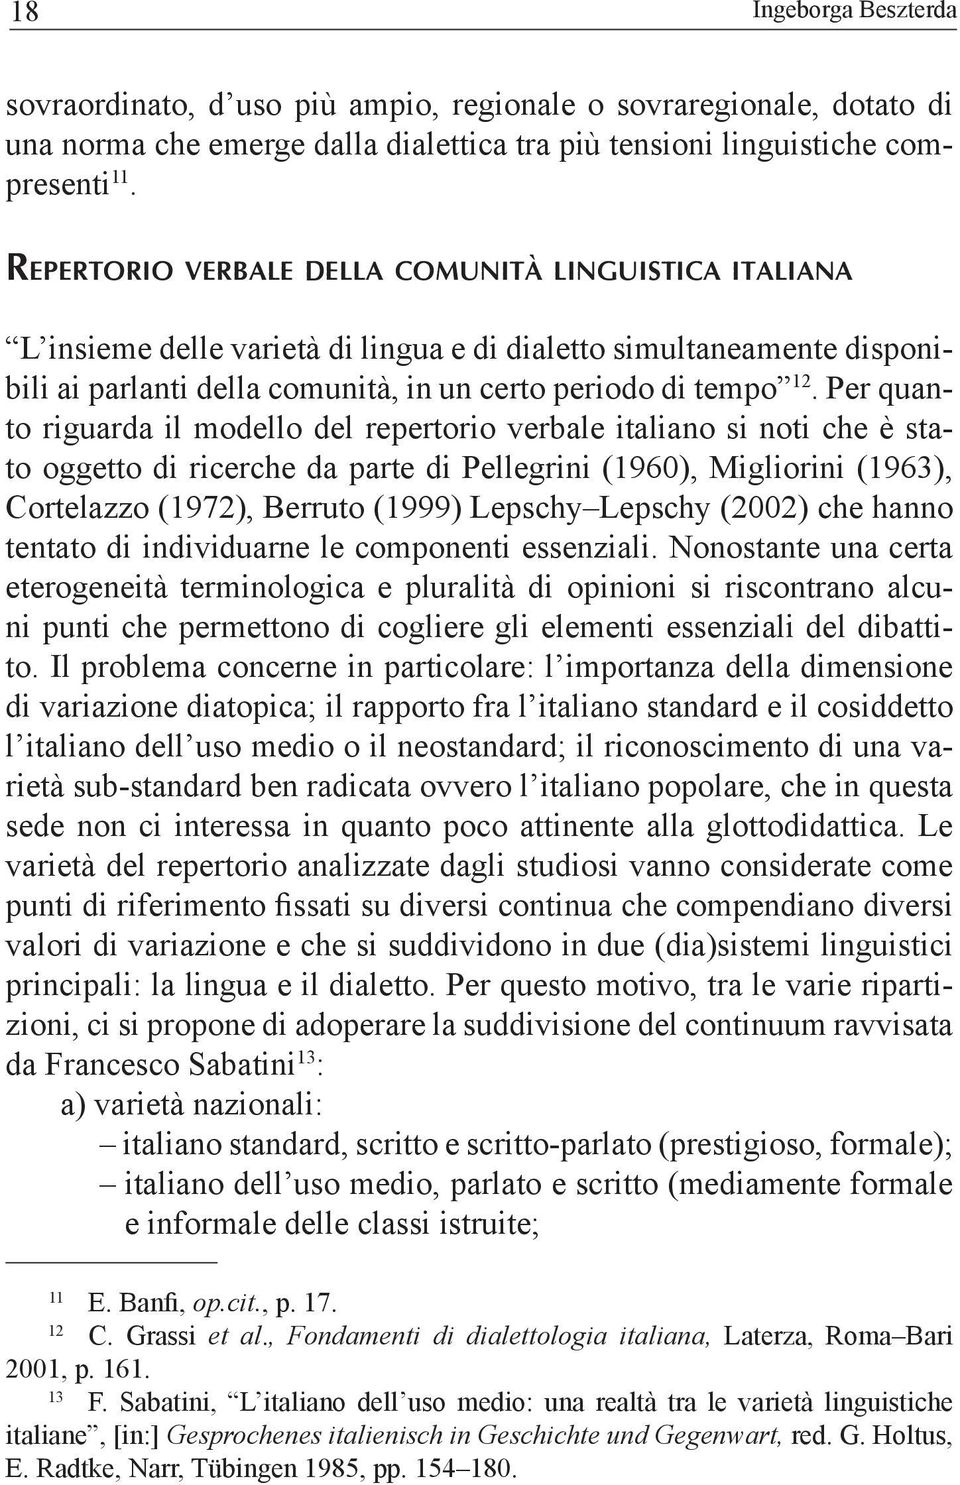 Per quanto riguarda il modello del repertorio verbale italiano si noti che è stato oggetto di ricerche da parte di Pellegrini (1960), Migliorini (1963), Cortelazzo (1972), Berruto (1999) Lepschy